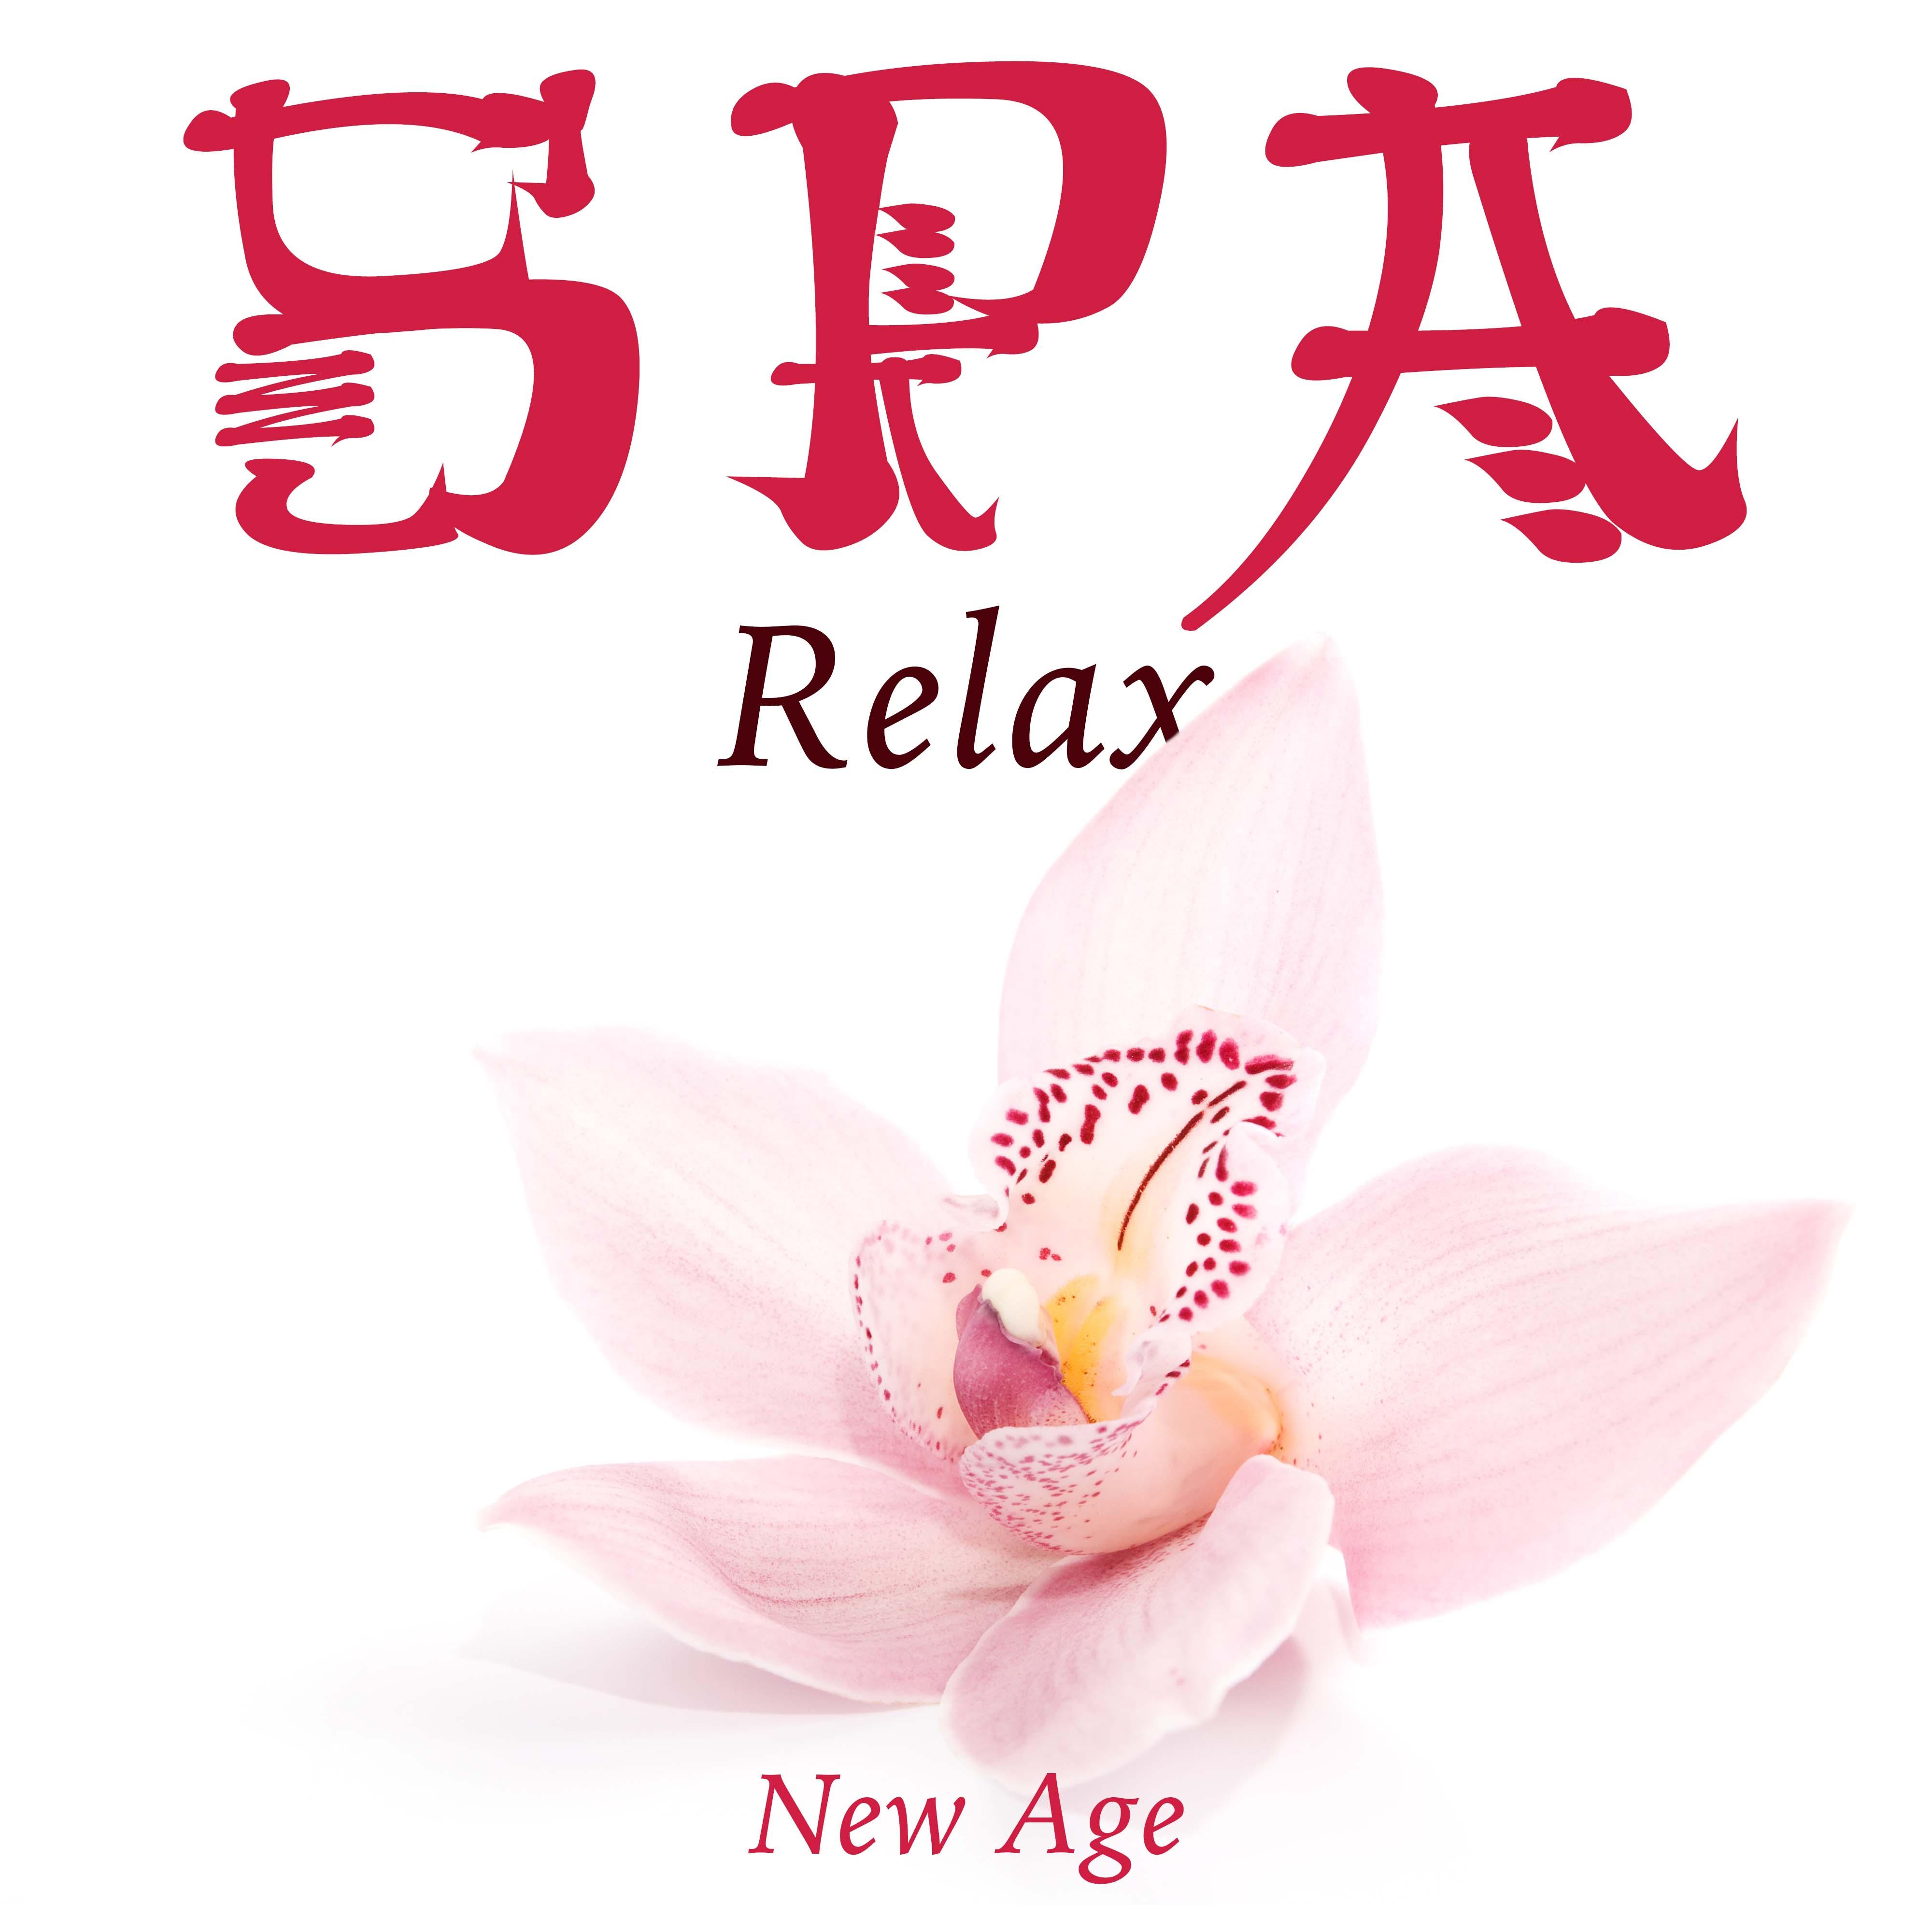 Spa Relax - Musique Relaxante pour Massage